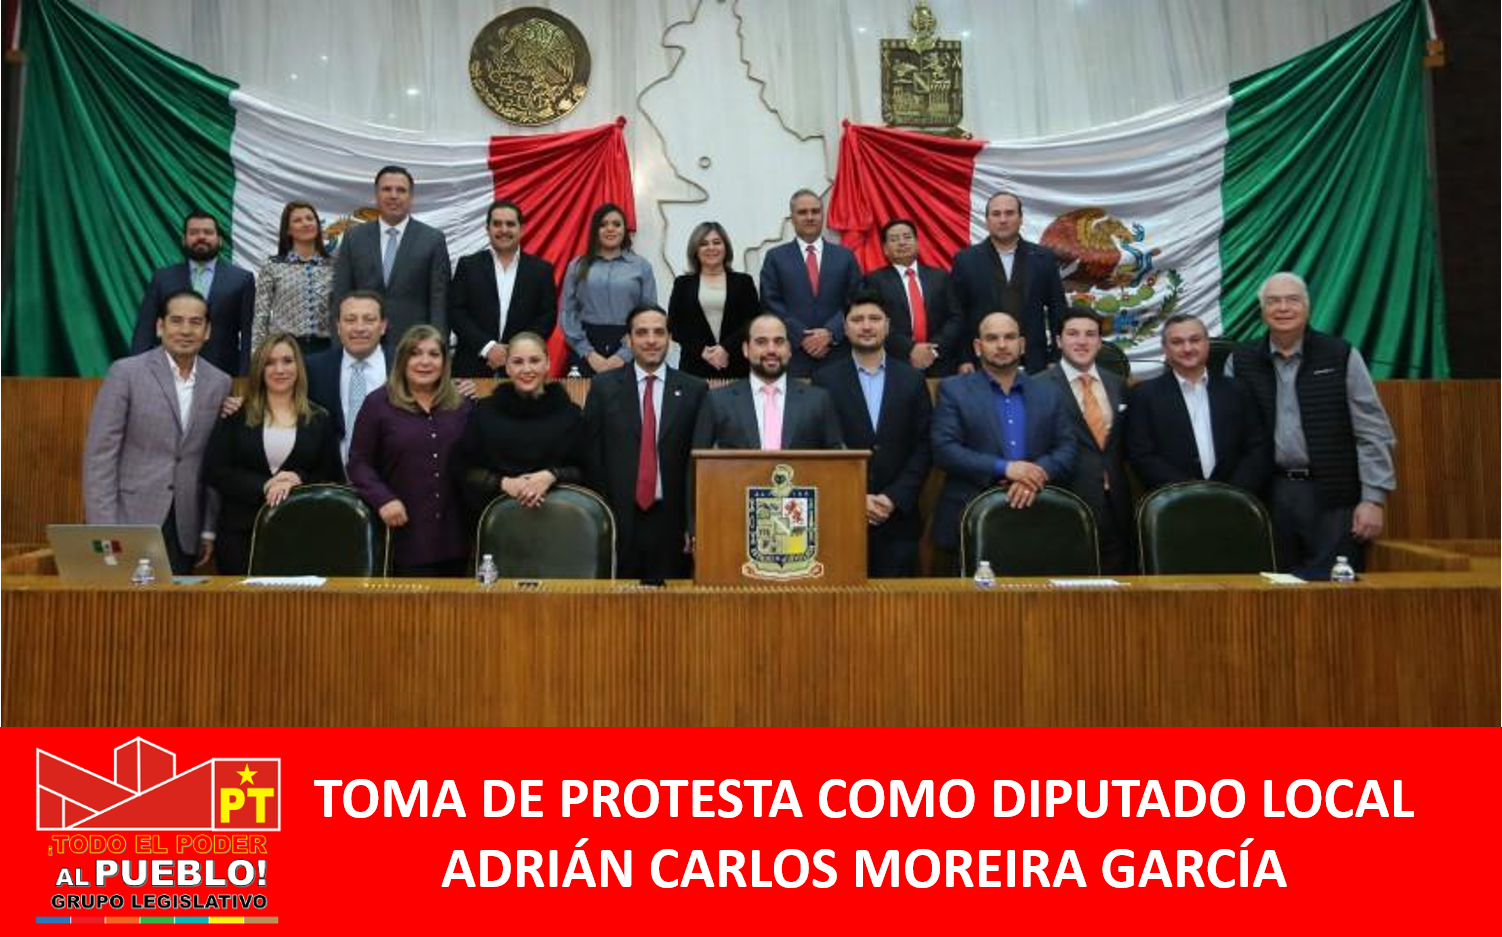 TOMA DE PROTESTA COMO DIPUTADO LOCAL, ADRIÁN CARLOS MOREIRA GARCÍA